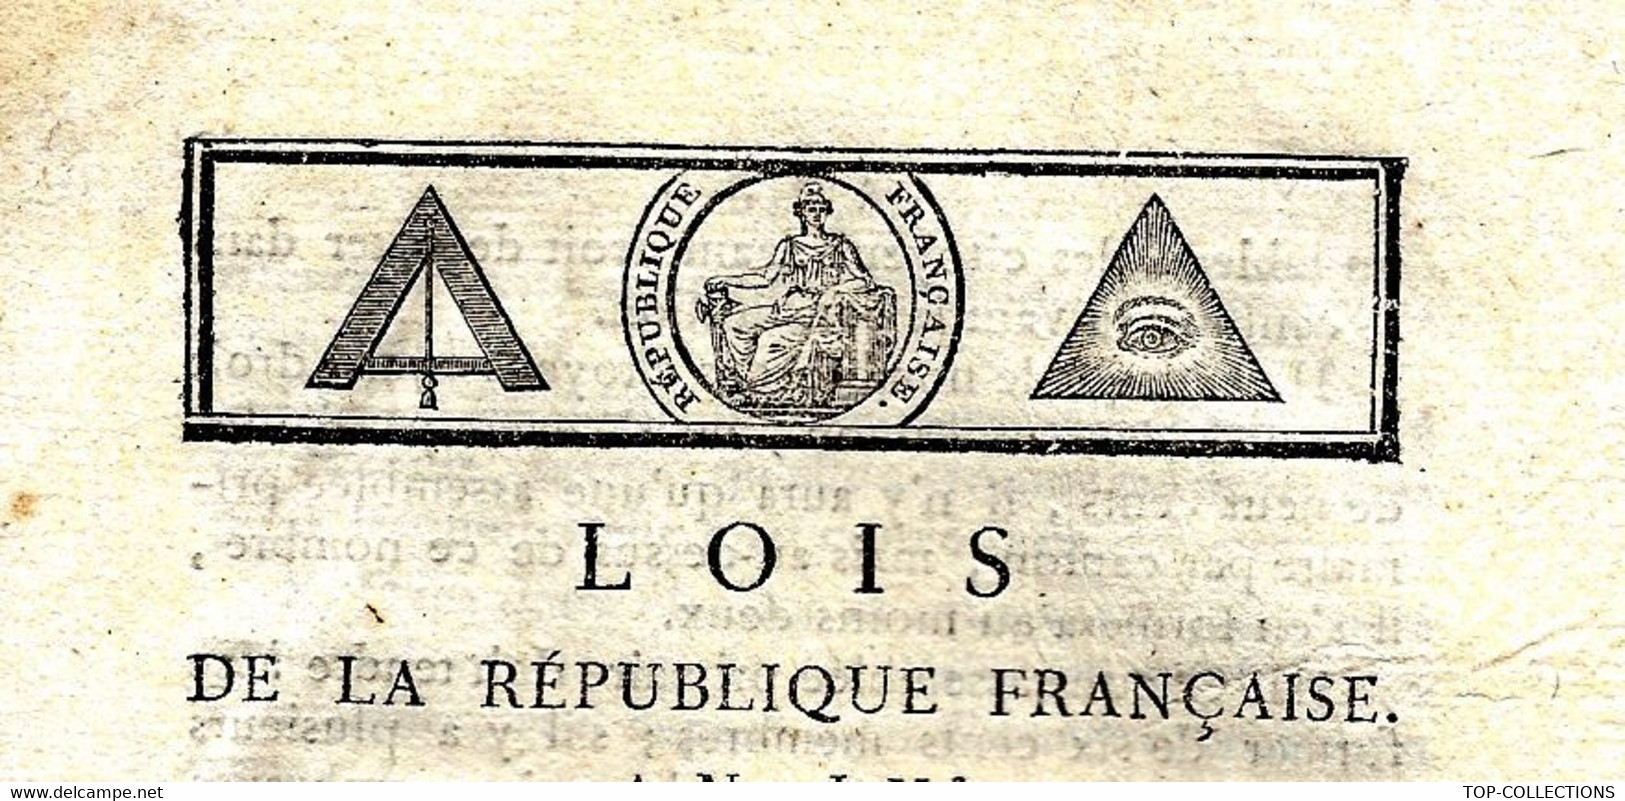 1796 LOI DE LA REPUBLIQUE FRANCAISE AN IV  N° 195 16 PAGES PARIS IMPRIMERIE DE LA REPUBLIQUE à Paris Avec 2 Signatures - Decreti & Leggi